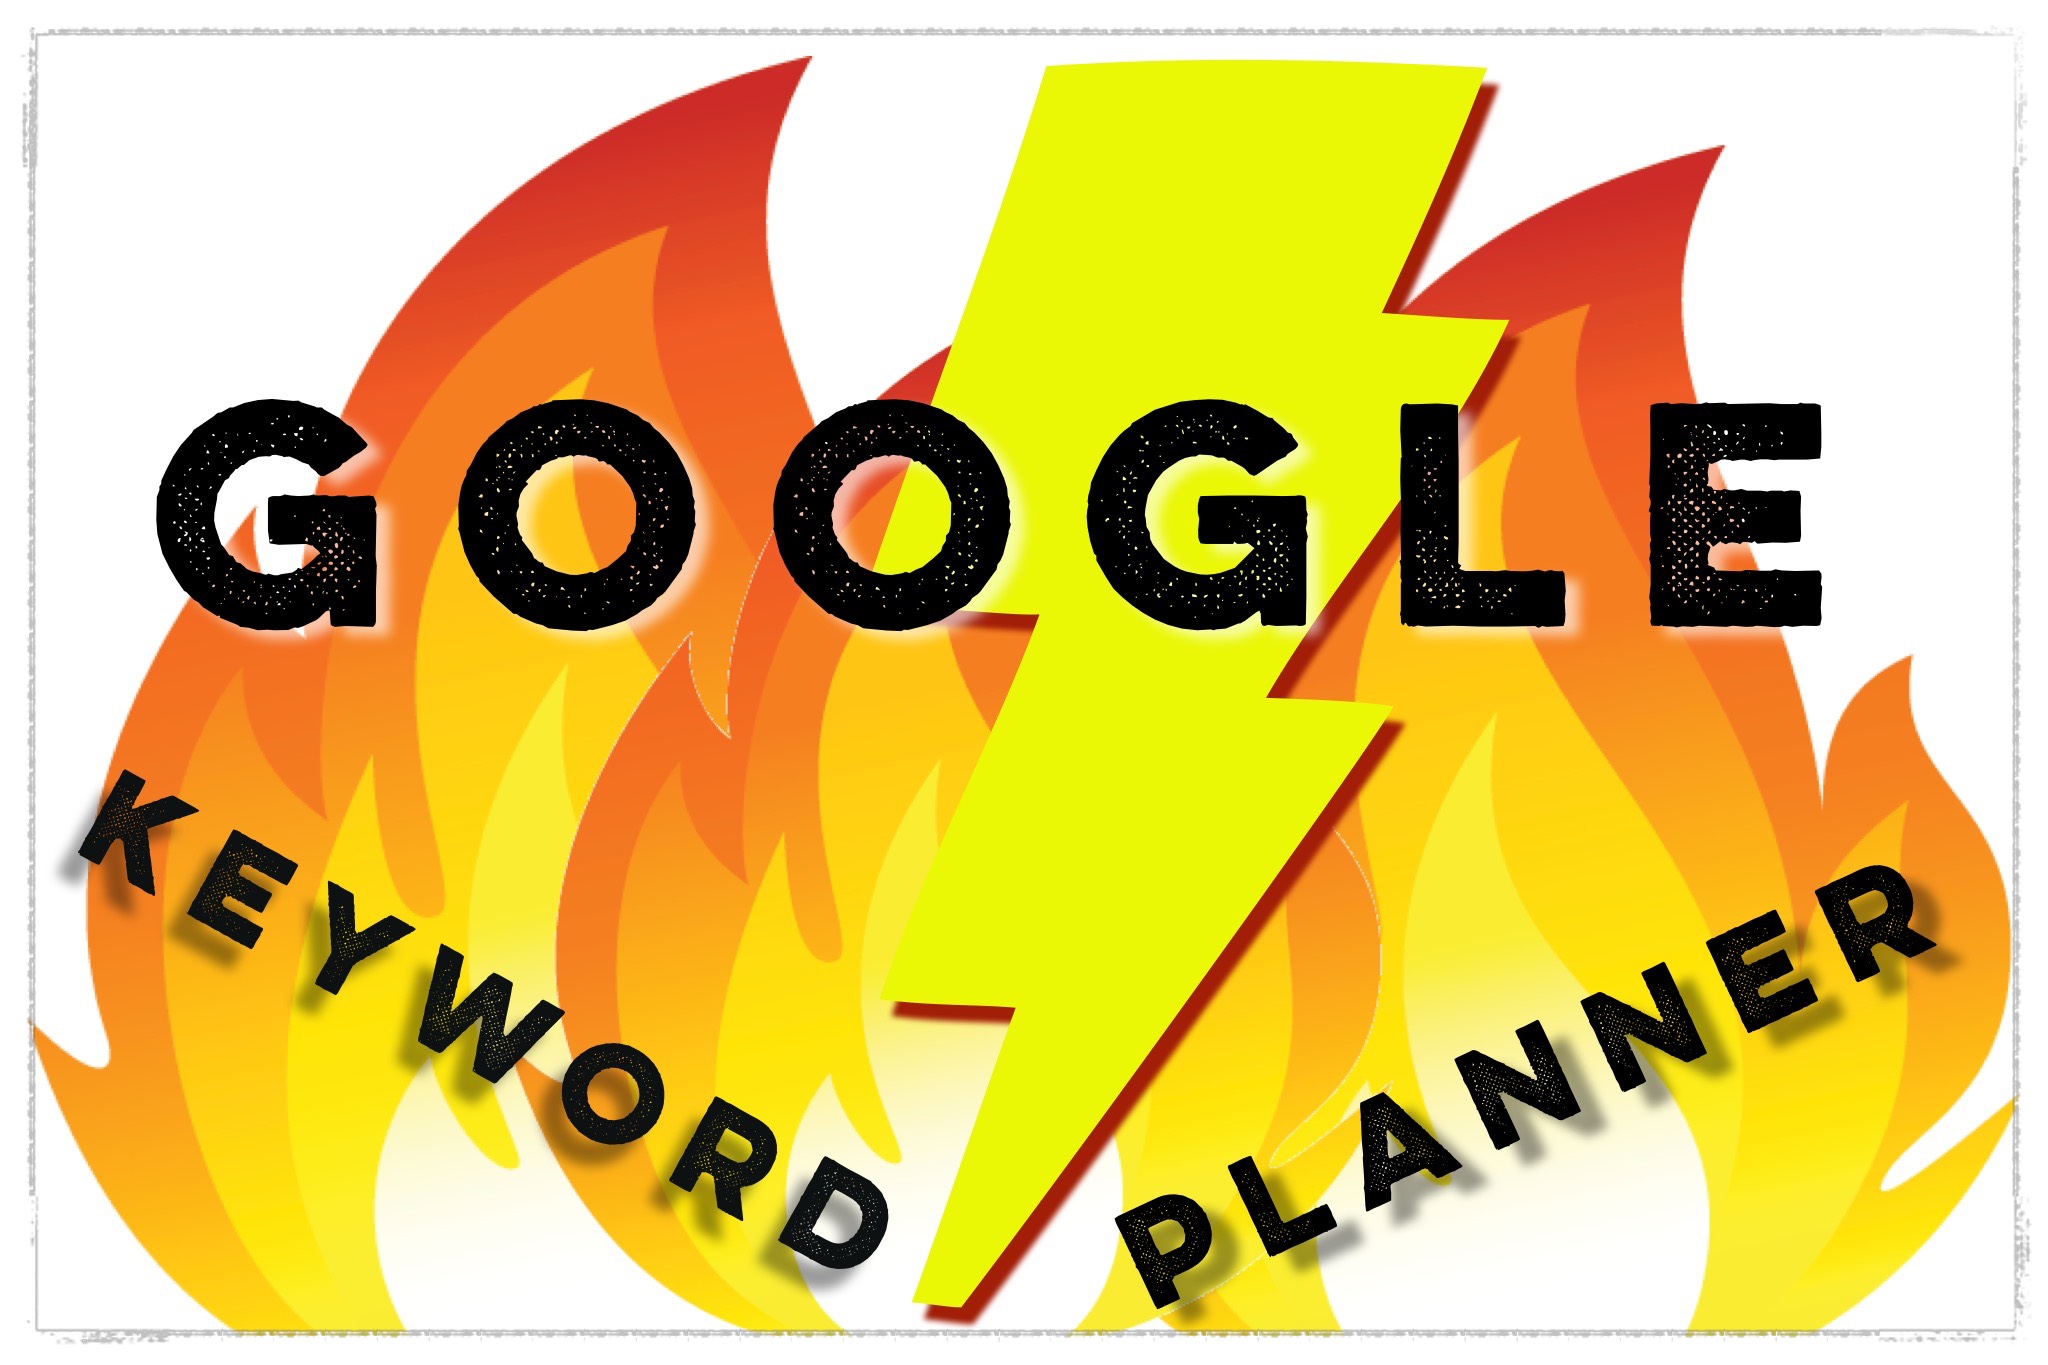 Google Keyword Planner Goes Kaput